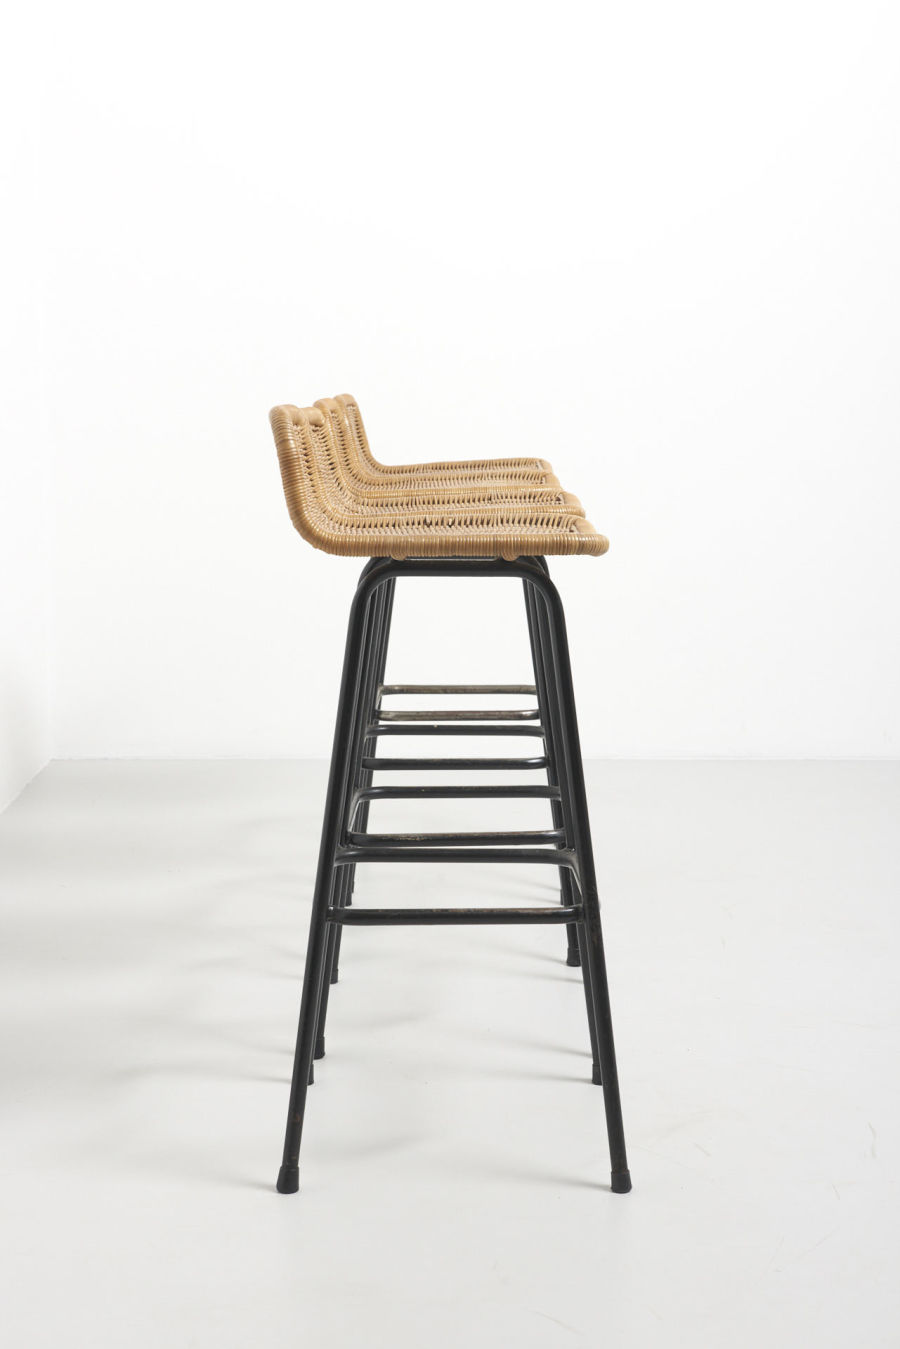 modestfurniture-vintage-2626-sliedrecht-bar-stools03